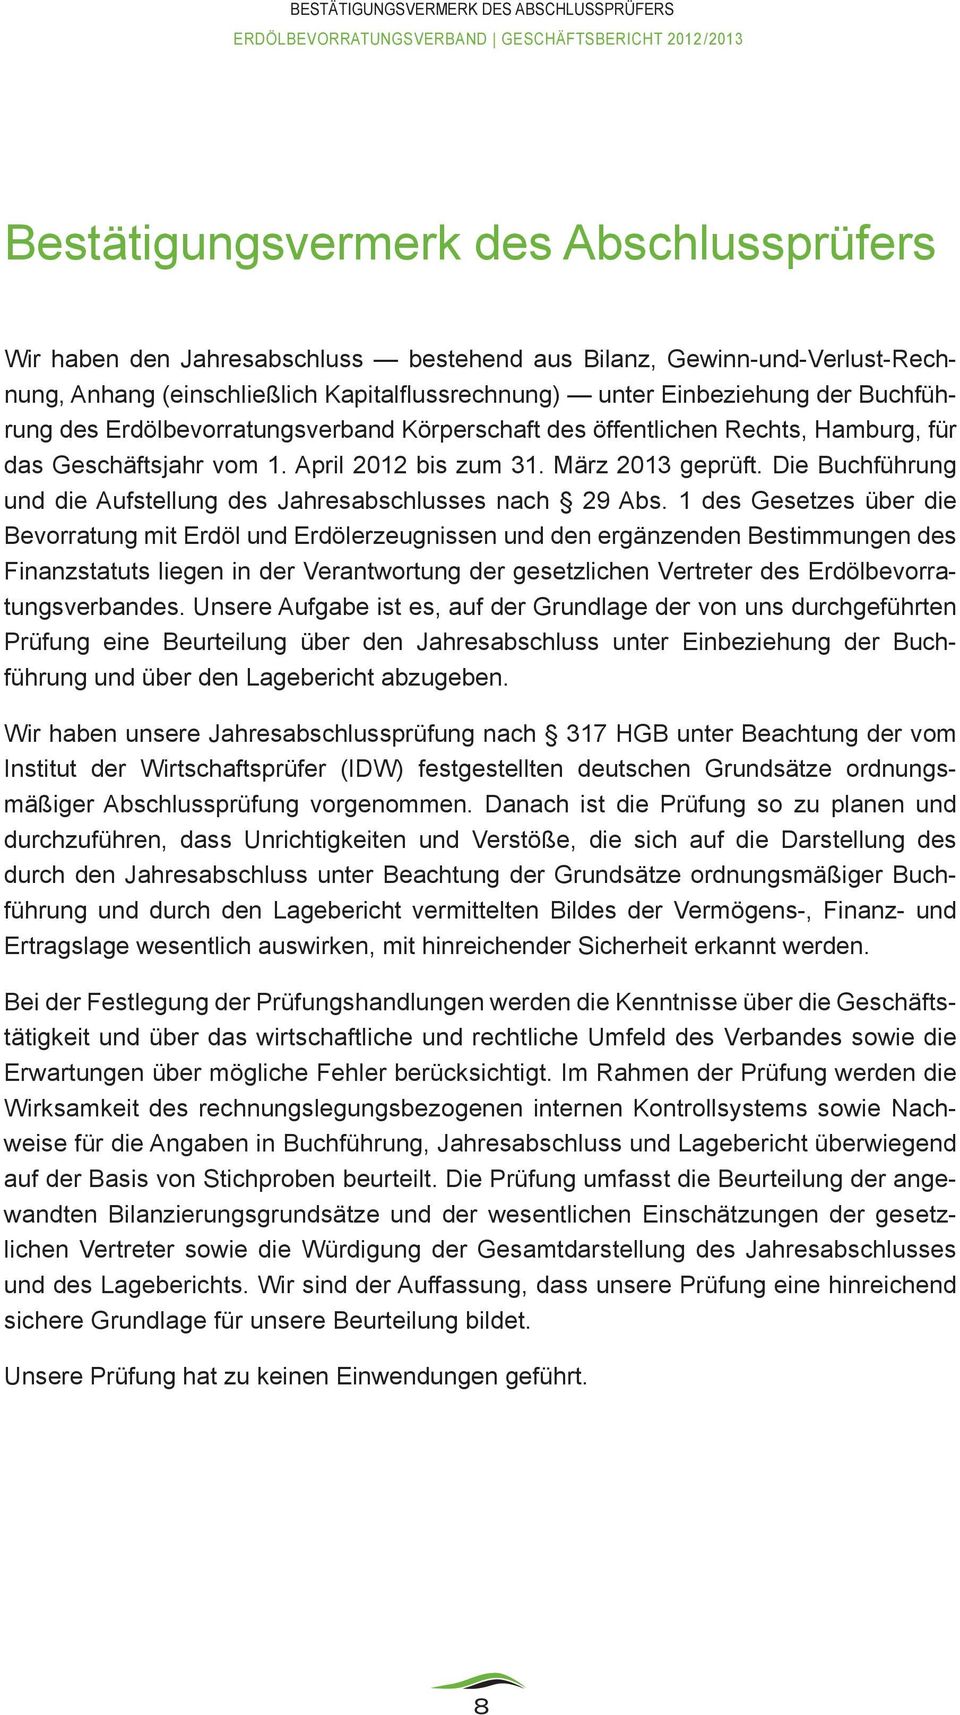 Hamburg, für das Geschäftsjahr vom 1. April 2012 bis zum 31. März 2013 geprüft. Die Buchführung und die Aufstellung des Jahresabschlusses nach 29 Abs.